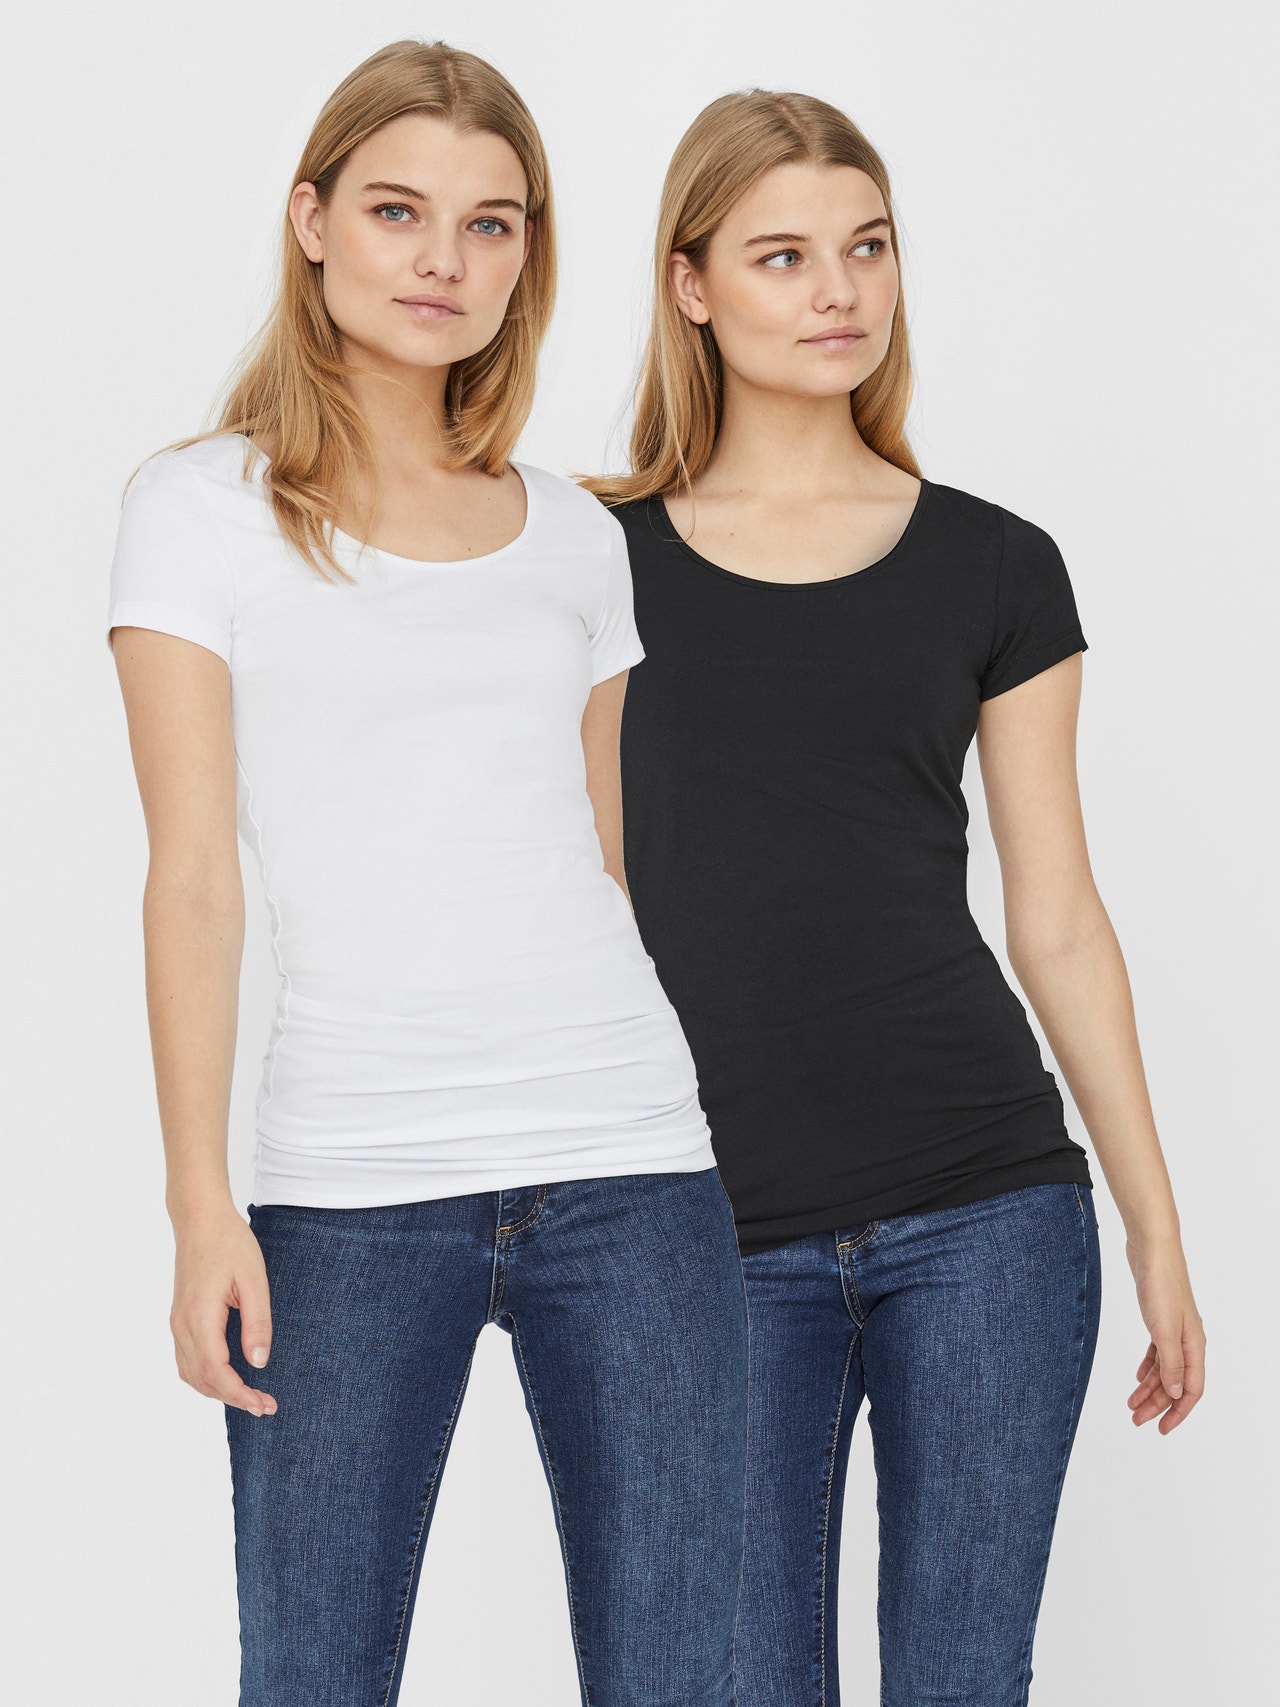 Vero Moda VMMAXI T-shirts -Bright White - 10236180